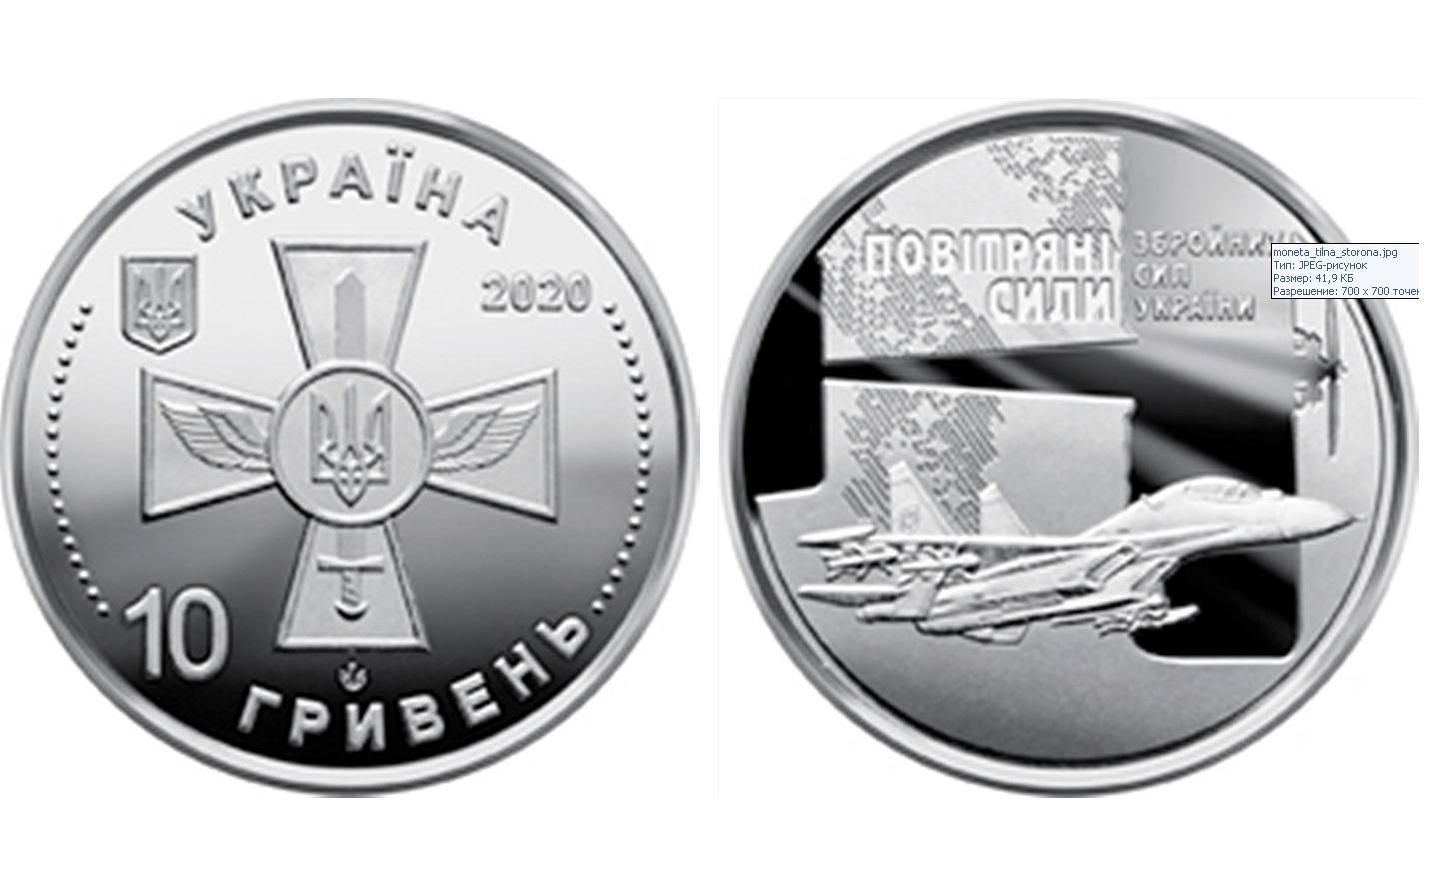 Невдало вибрано зображення на 10-гривневій монеті